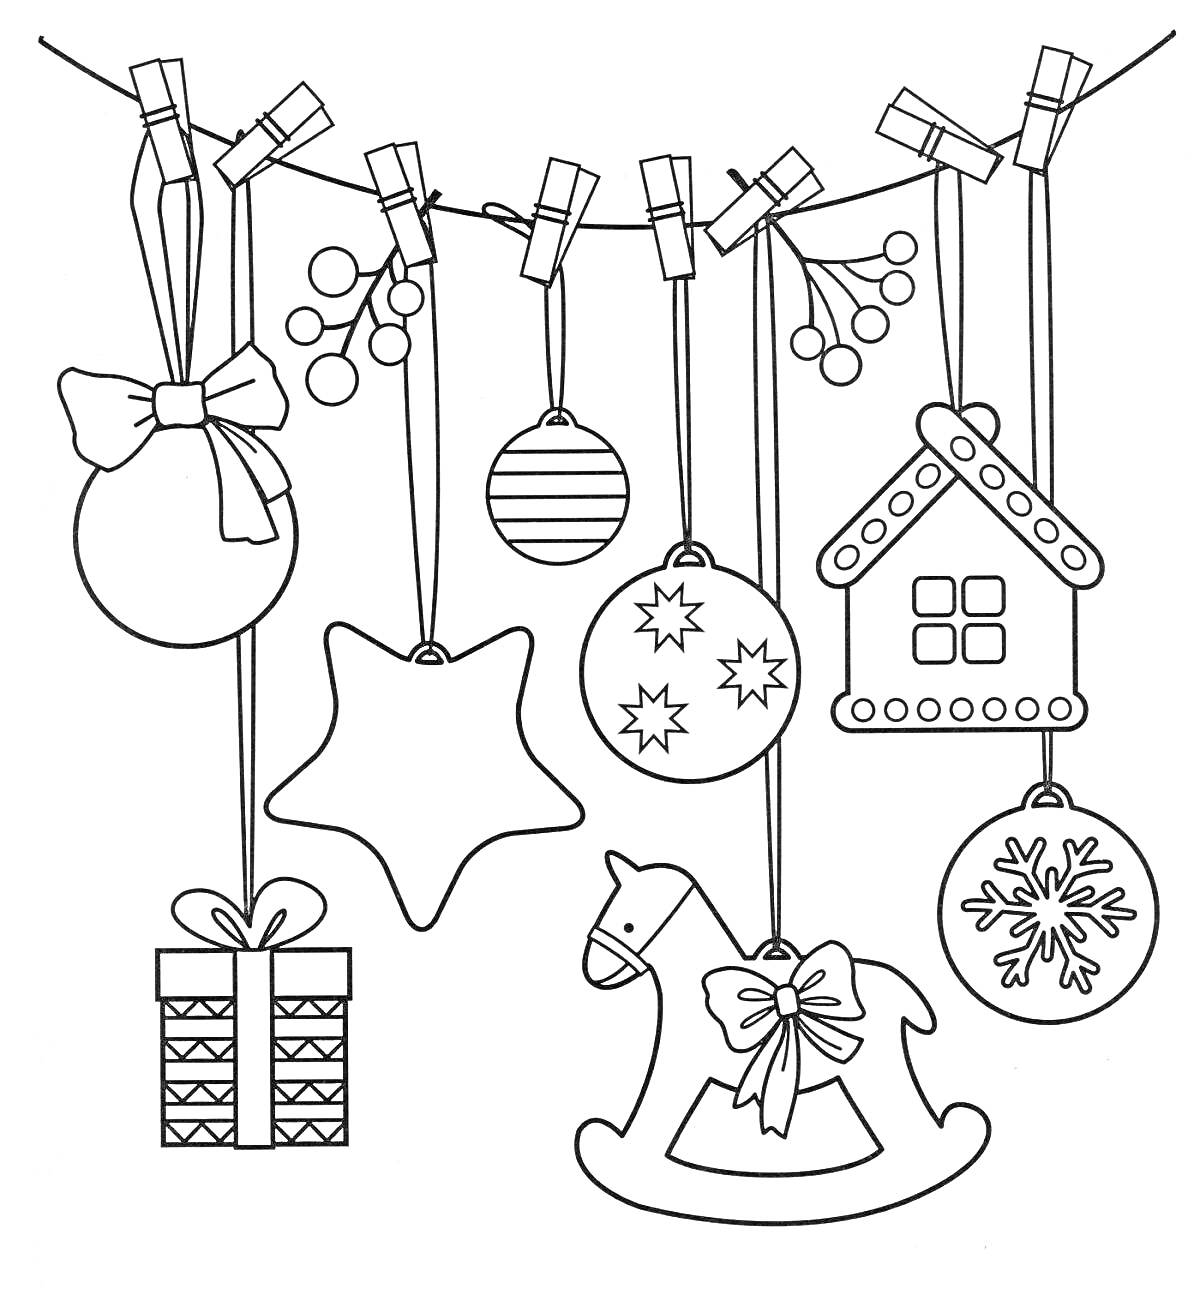 Раскраска Елочные игрушки на веревочке: шары, звезда, домик, подарок, лошадка